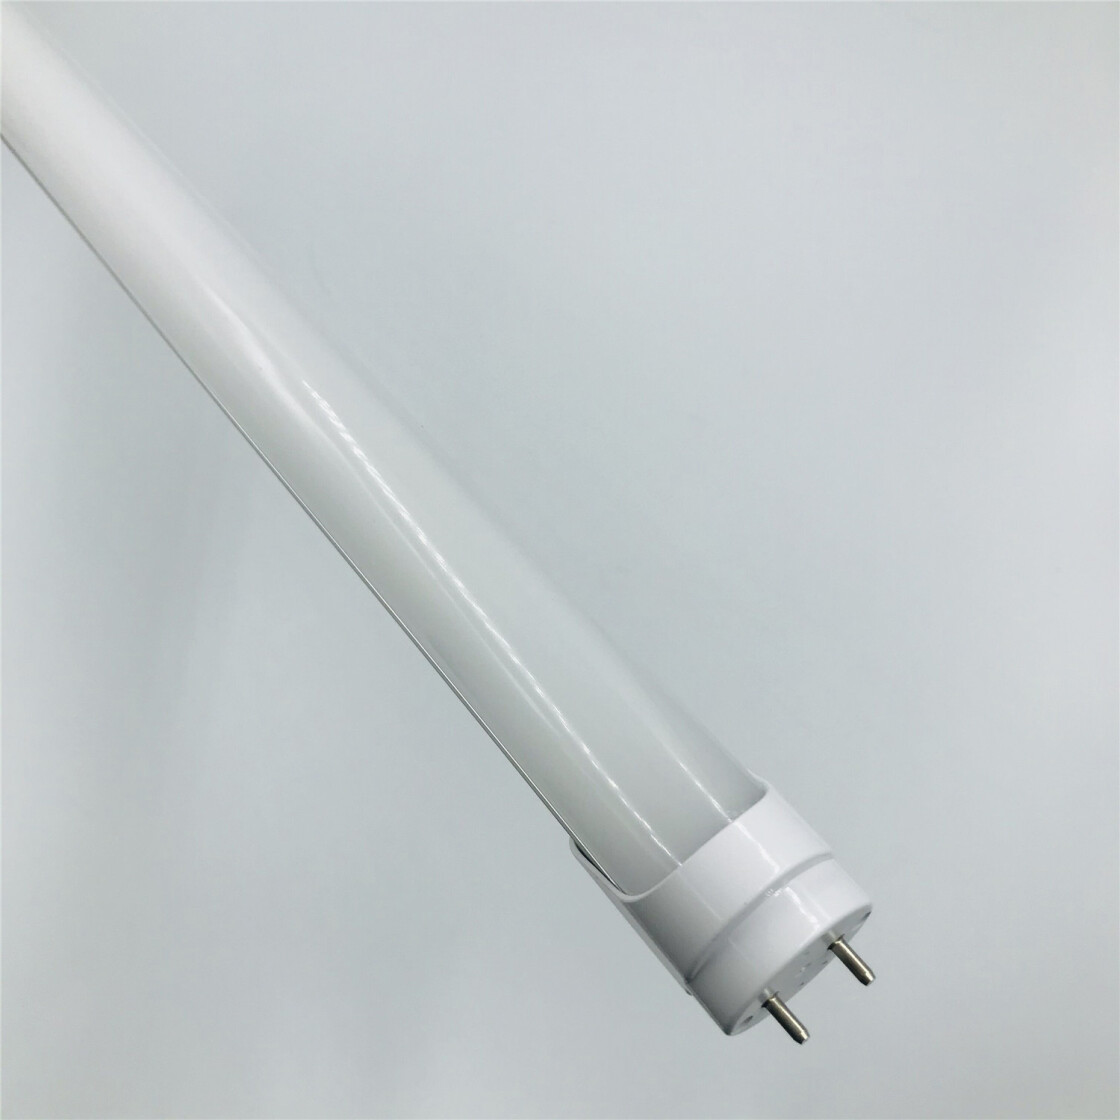 METOLIGHT LED-Röhre-120-SCE-RM-175, 120 cm, 20 Watt, T8, 3400 lm, matt,  tagweiß